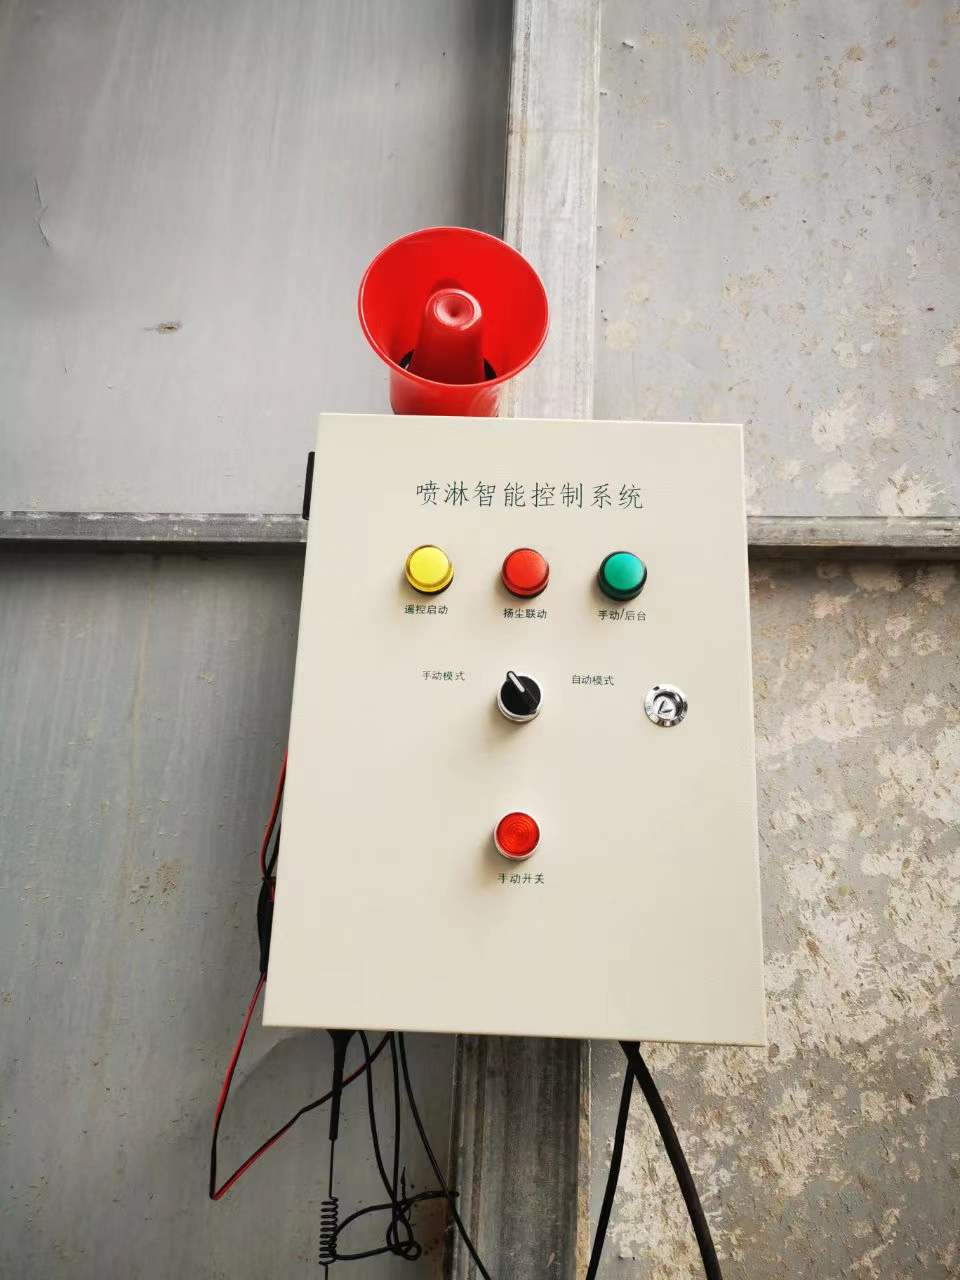 衢州喷淋联动 工地喷淋智能控制系统 安徽赛芙智能科技有限公司